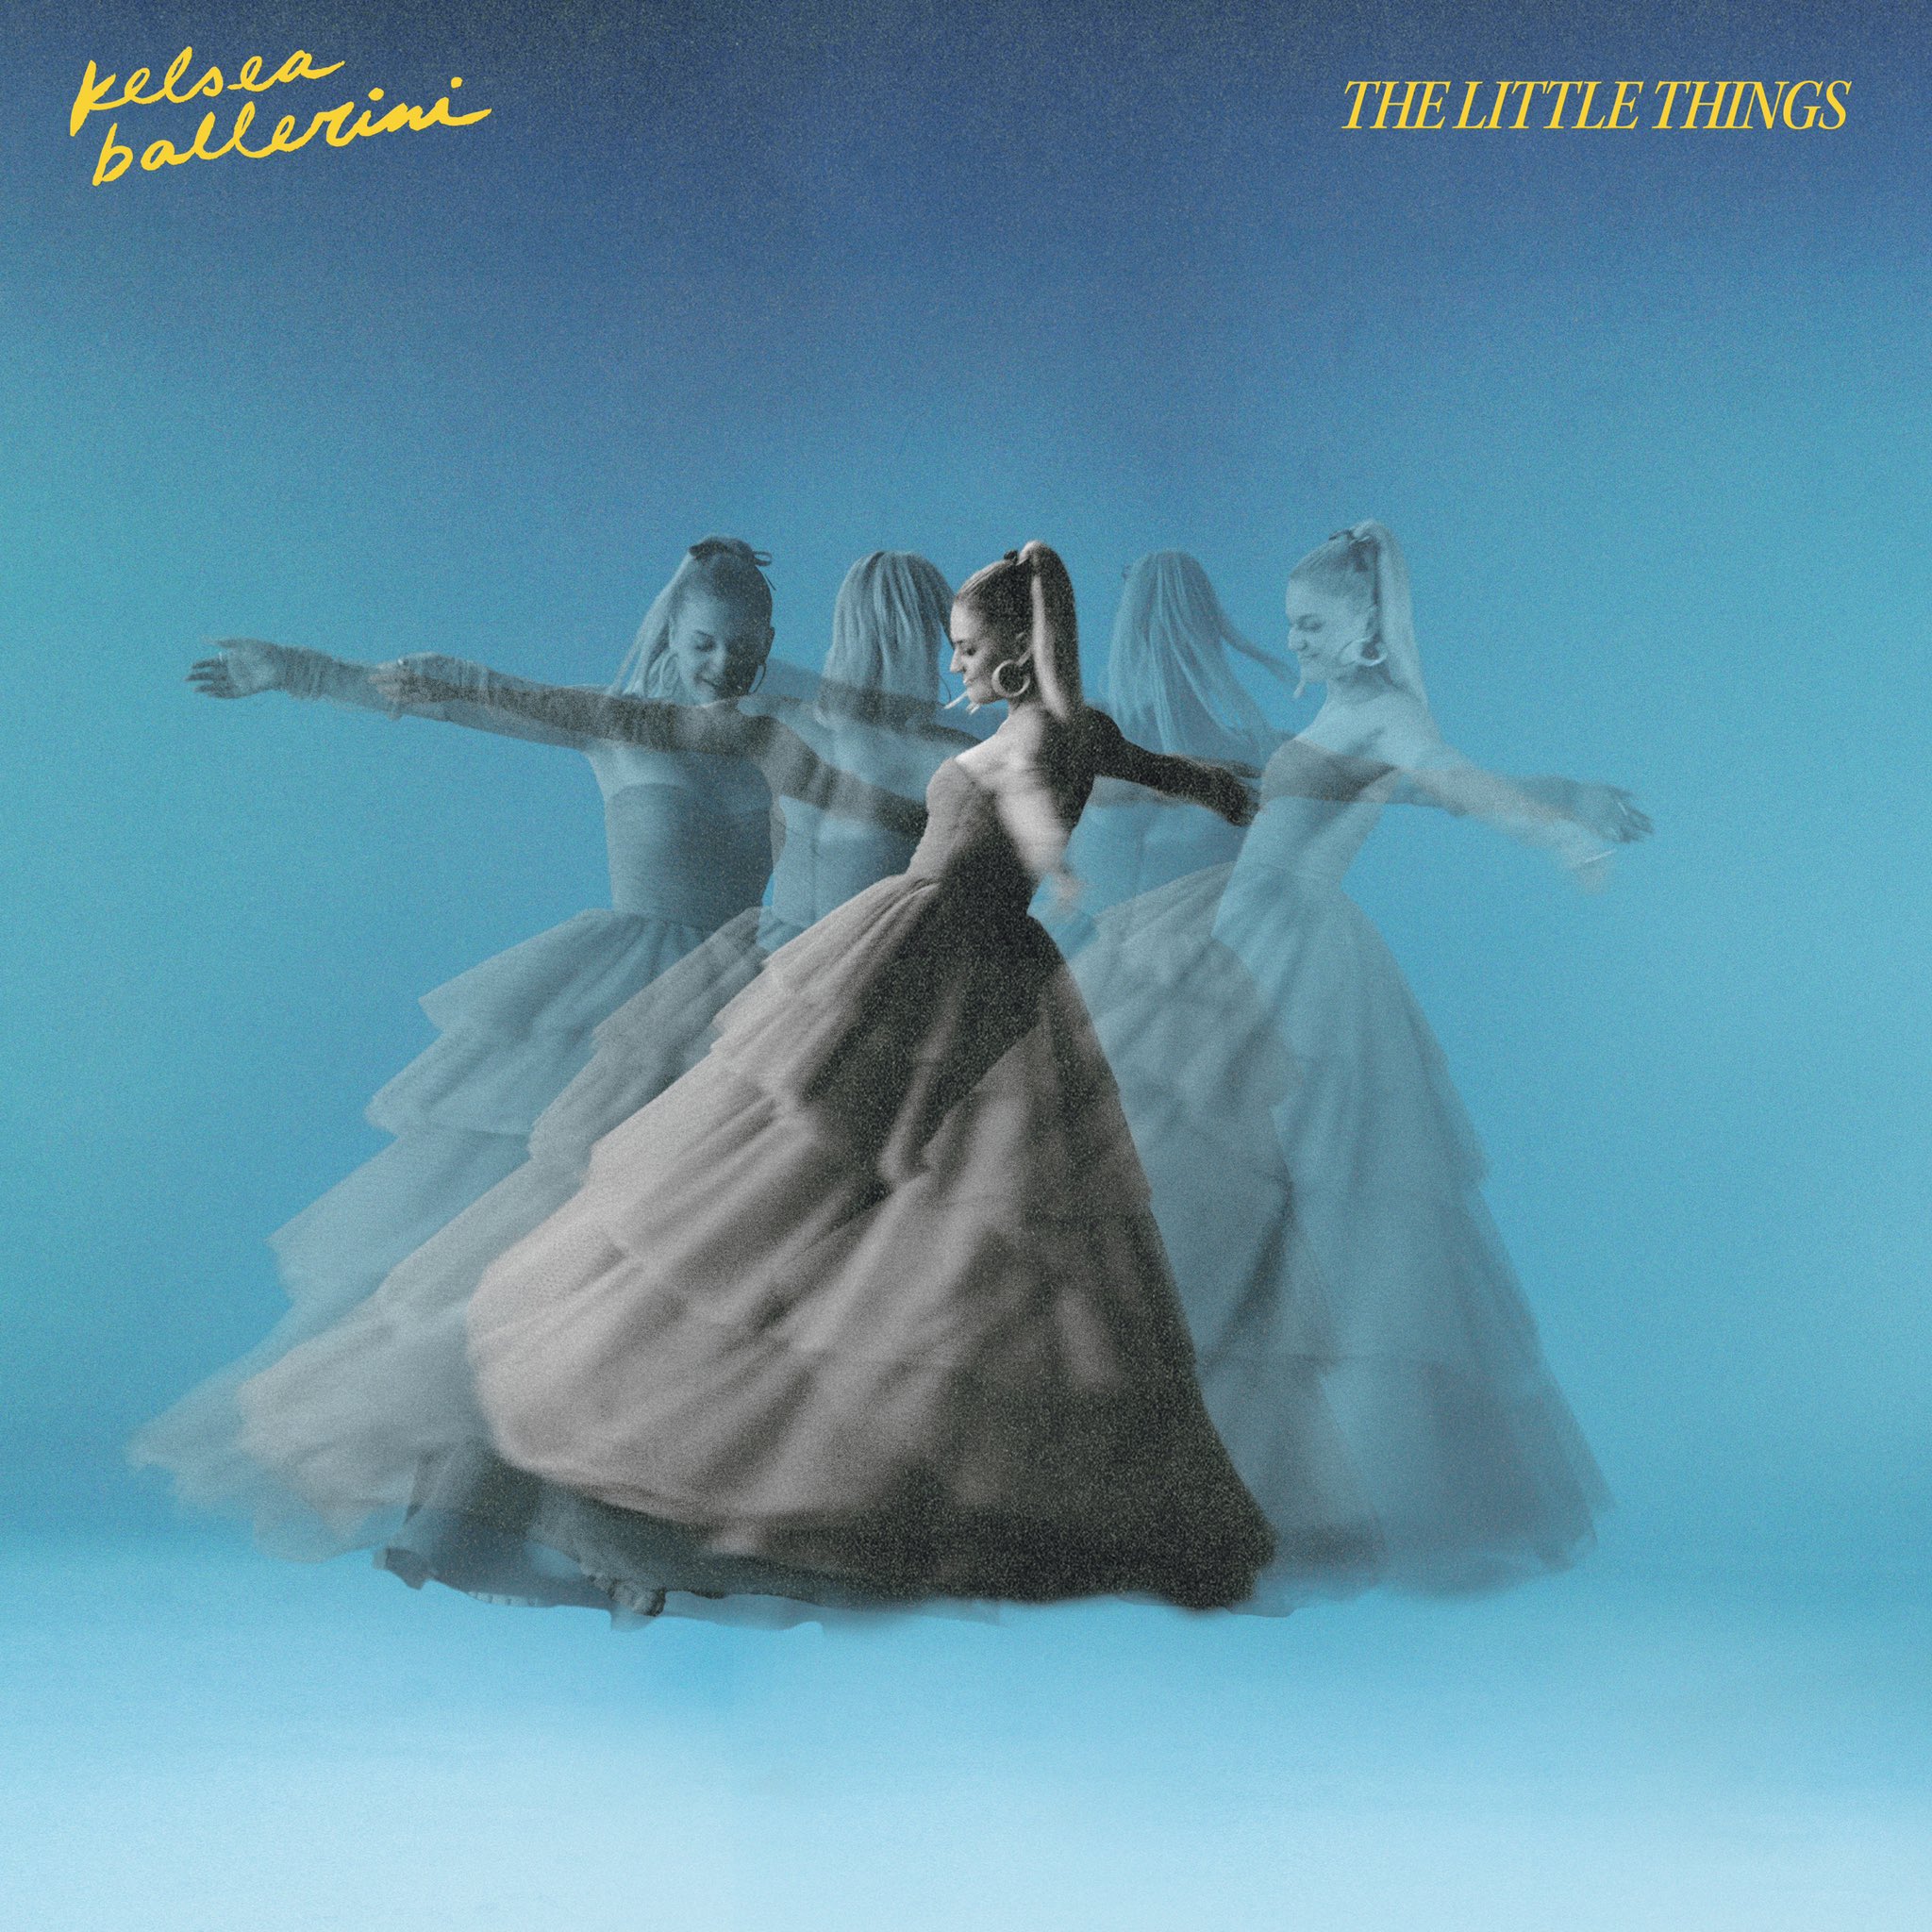 Kelsea Ballerini — THE LITTLE THINGS cover artwork